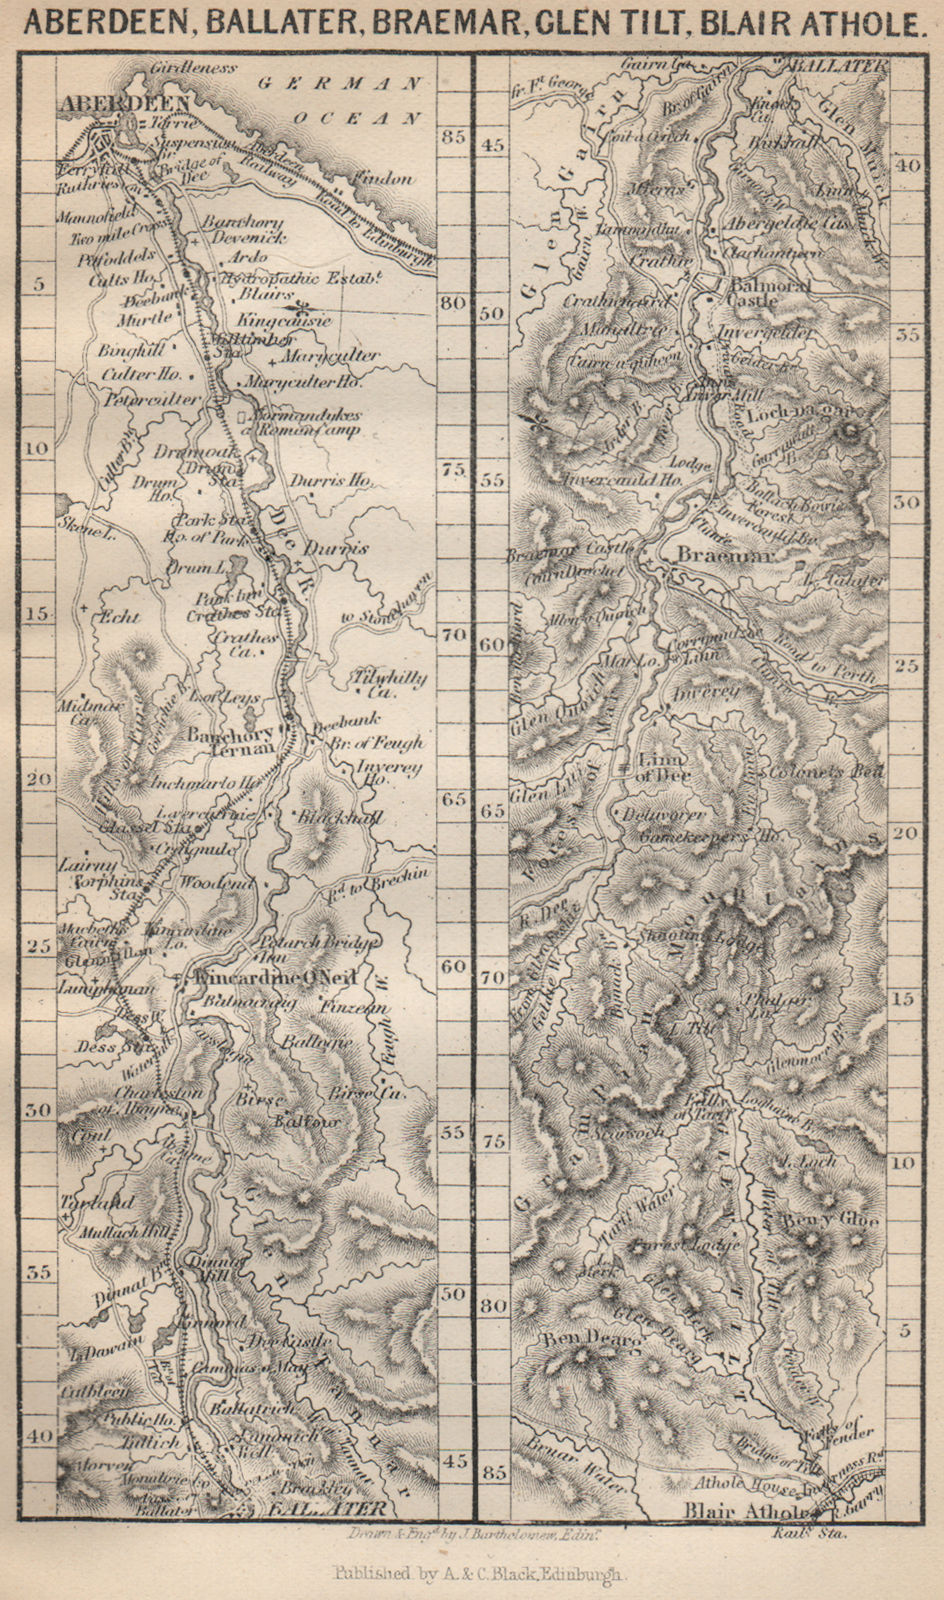 ABERDEEN, Ballater, Braemar, Tilt, Blair Athole. Scotland 1886 old antique map